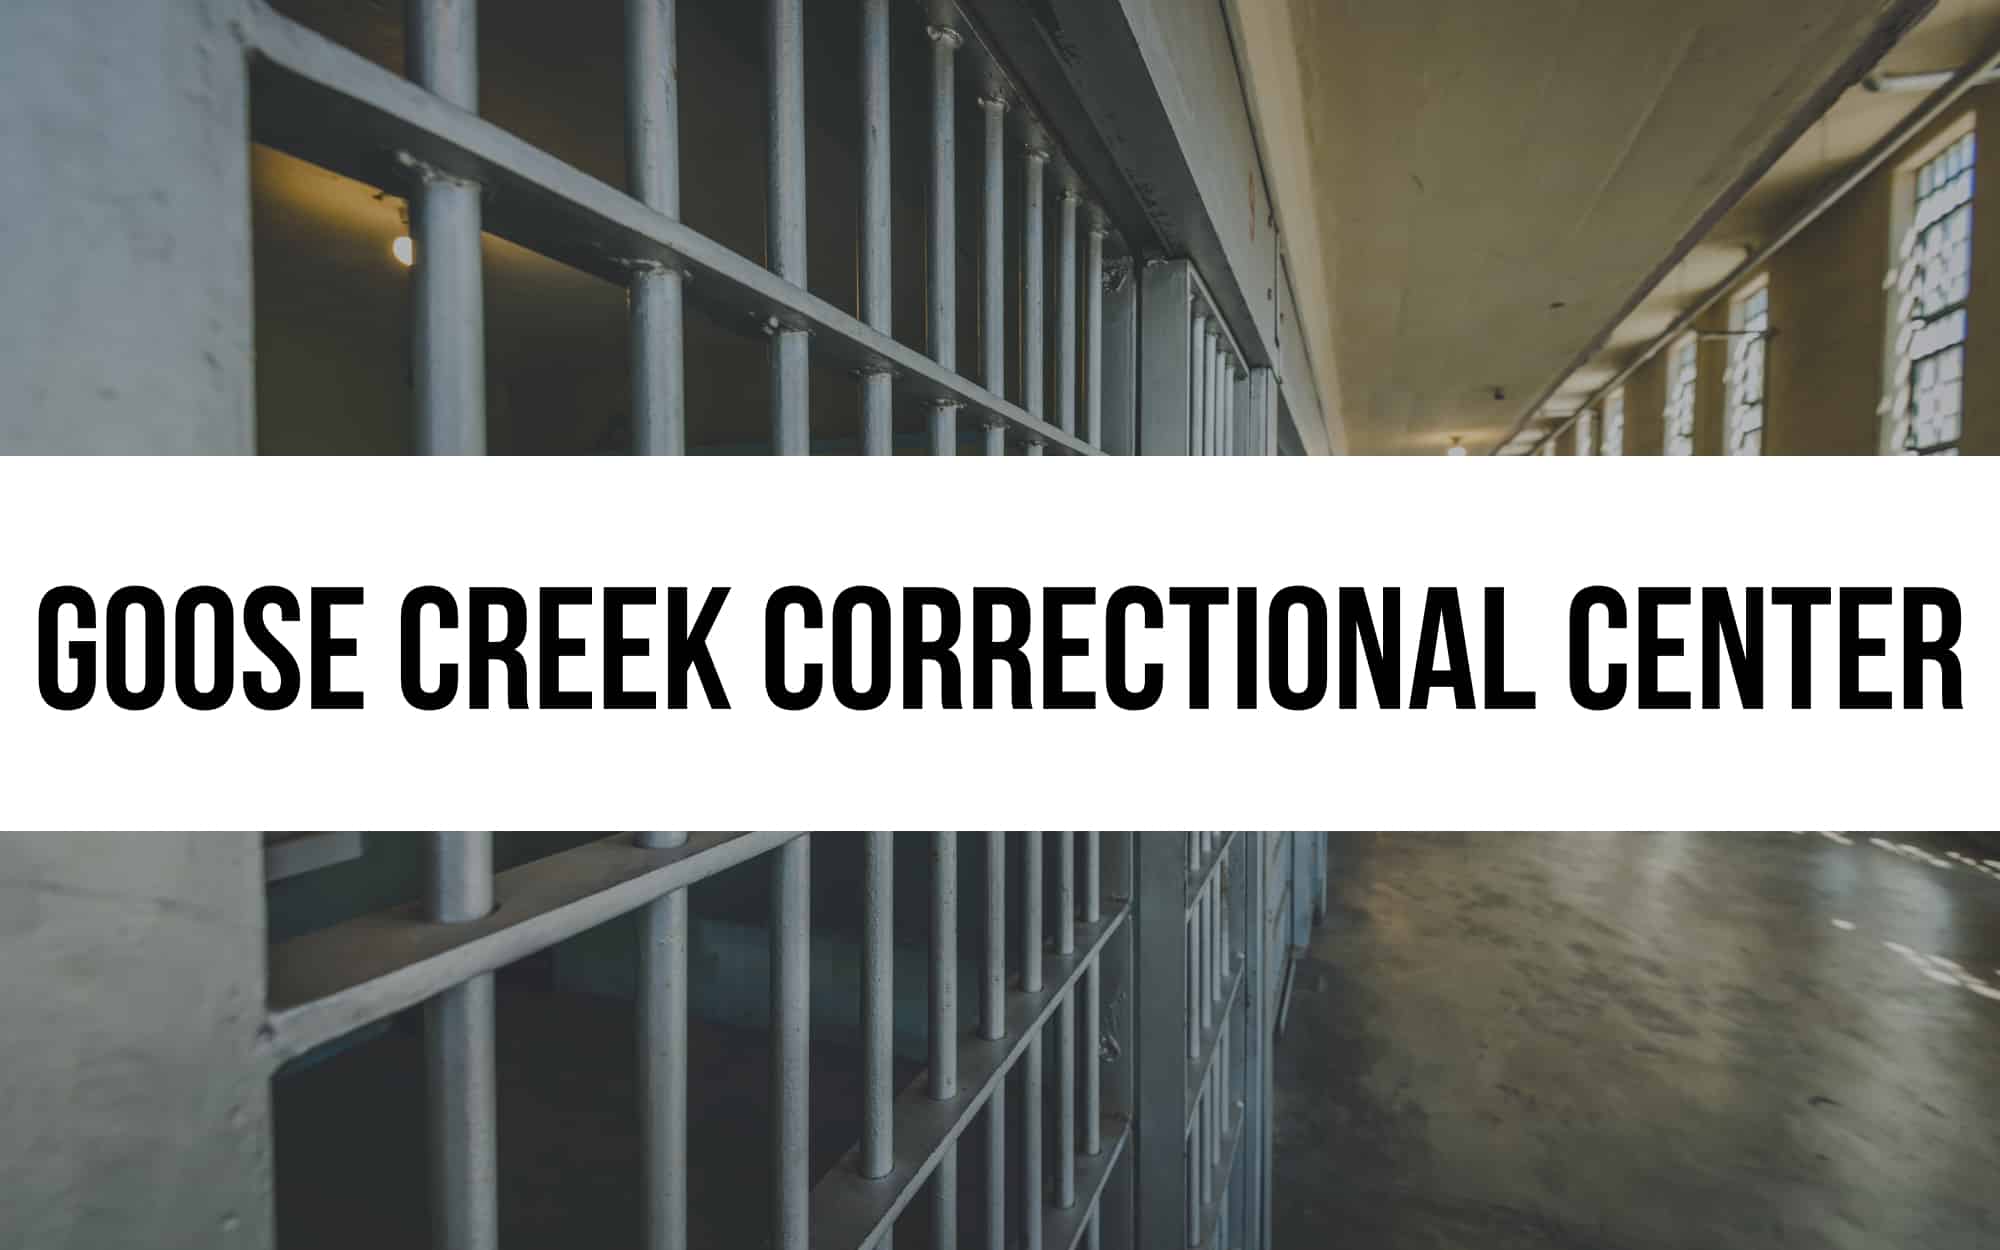 Goose Creek Correctional Center